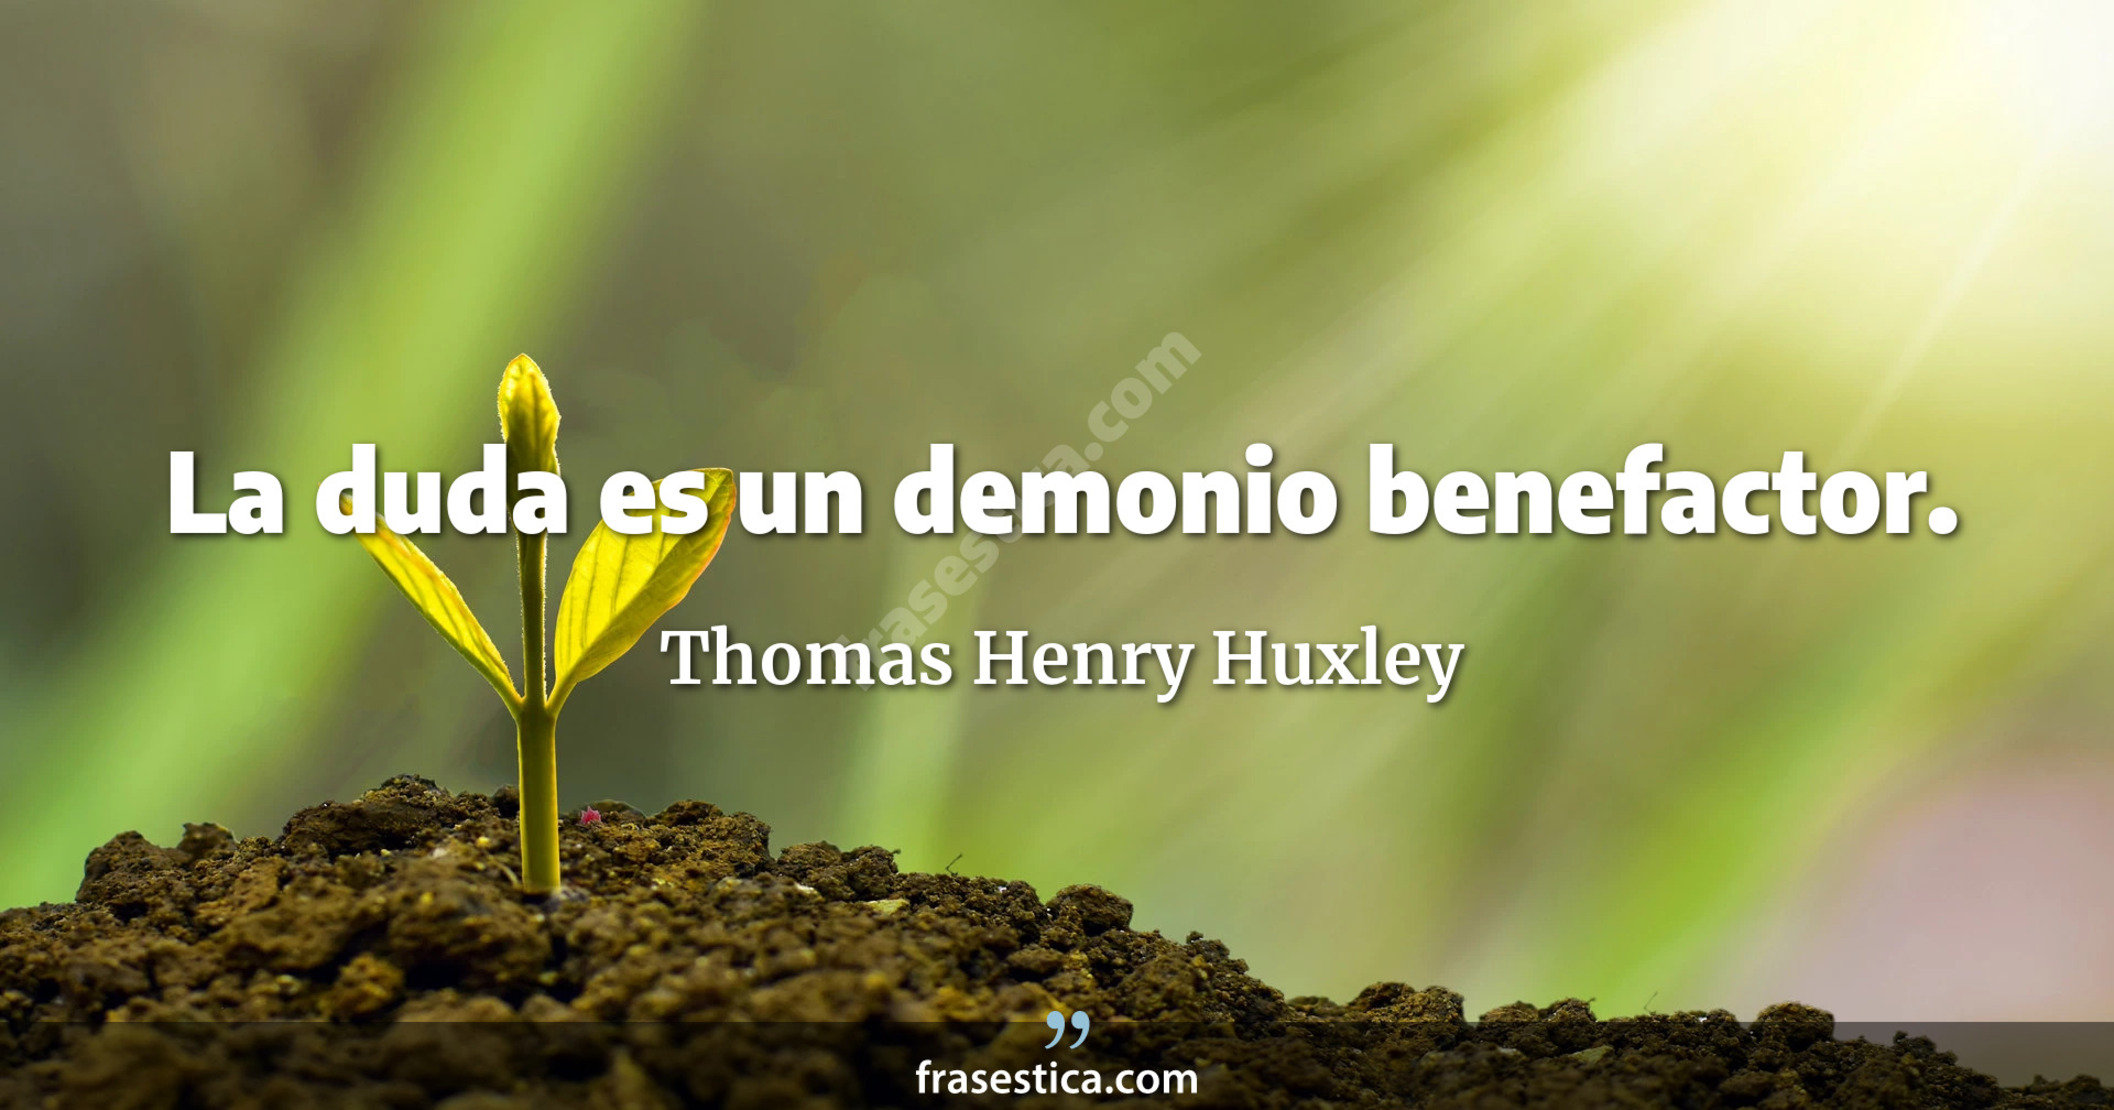 La duda es un demonio benefactor. - Thomas Henry Huxley